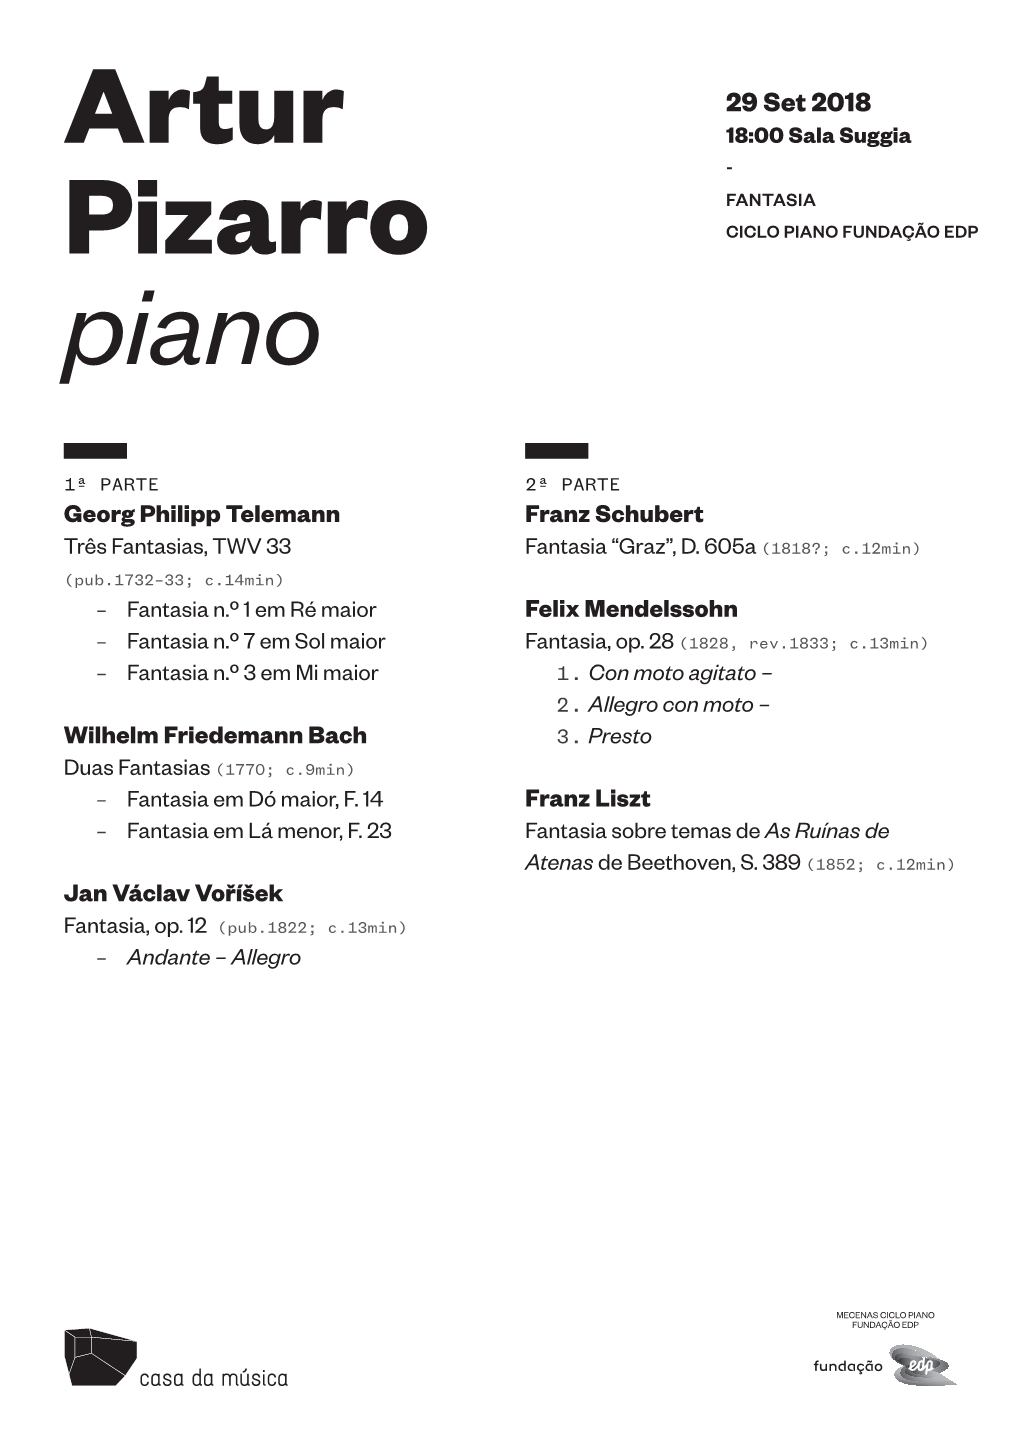 Artur Pizarro Piano